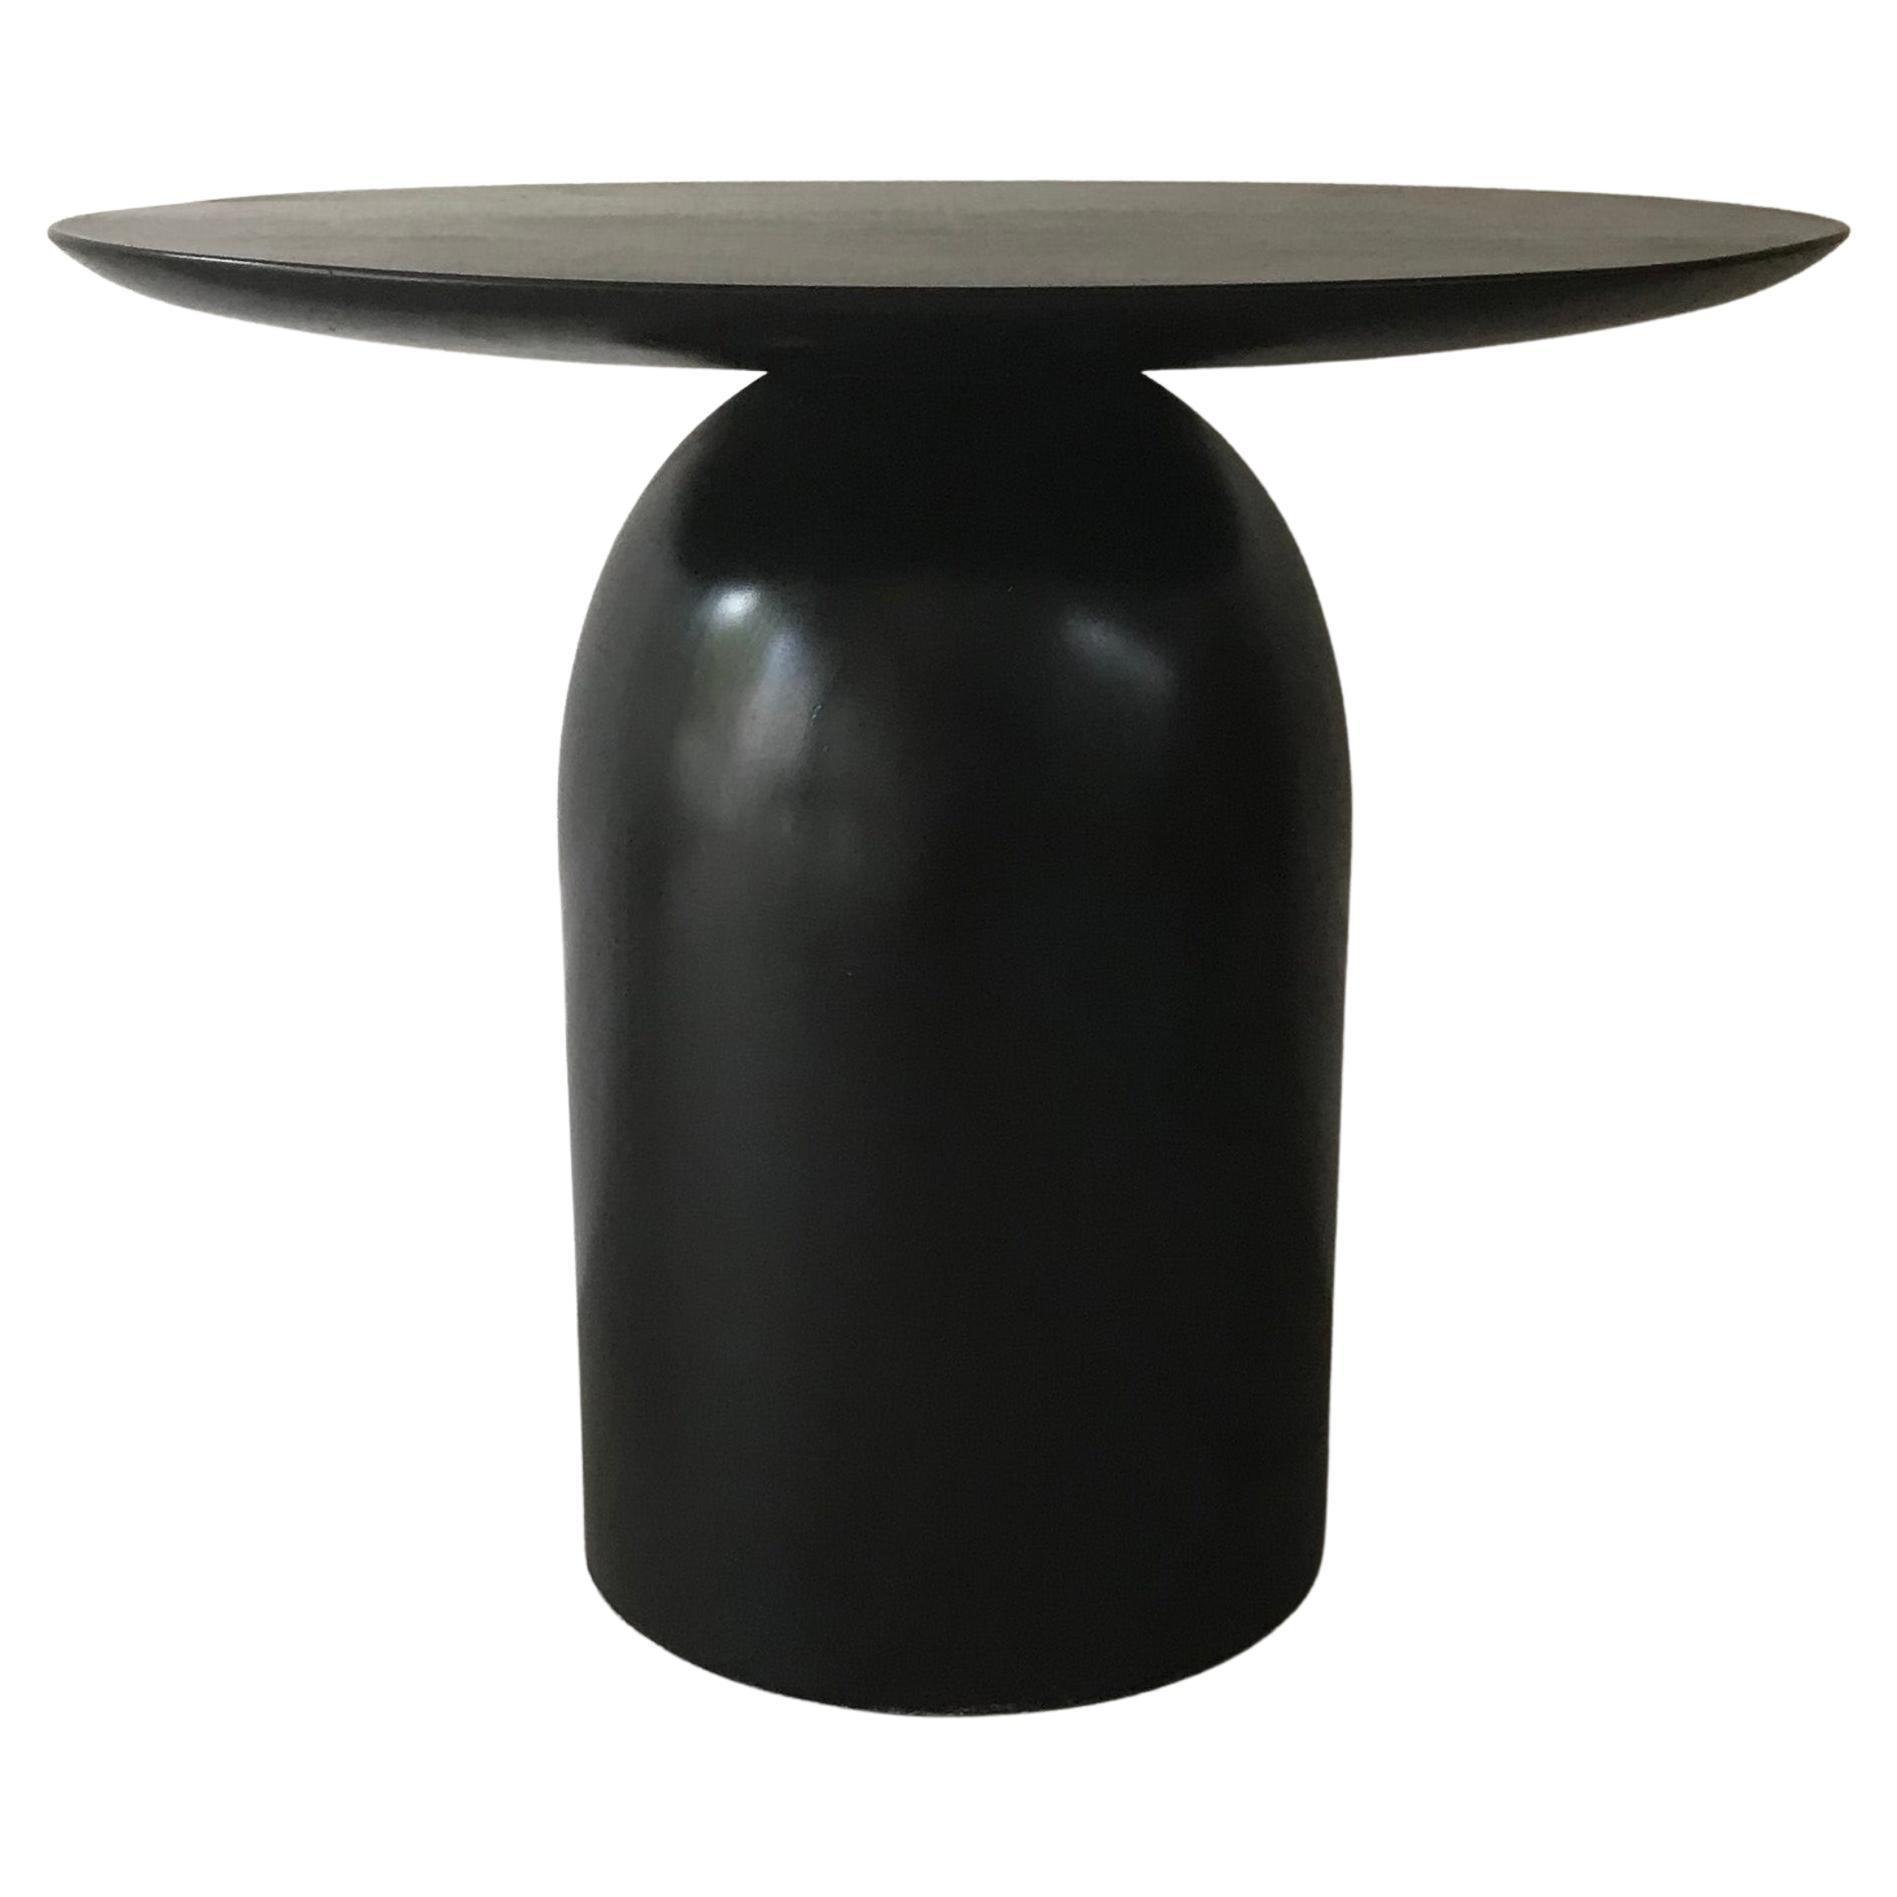 Table d'appoint ou table basse Egg Noir de Wende Reid, ébénisée, minimaliste et sculpturale